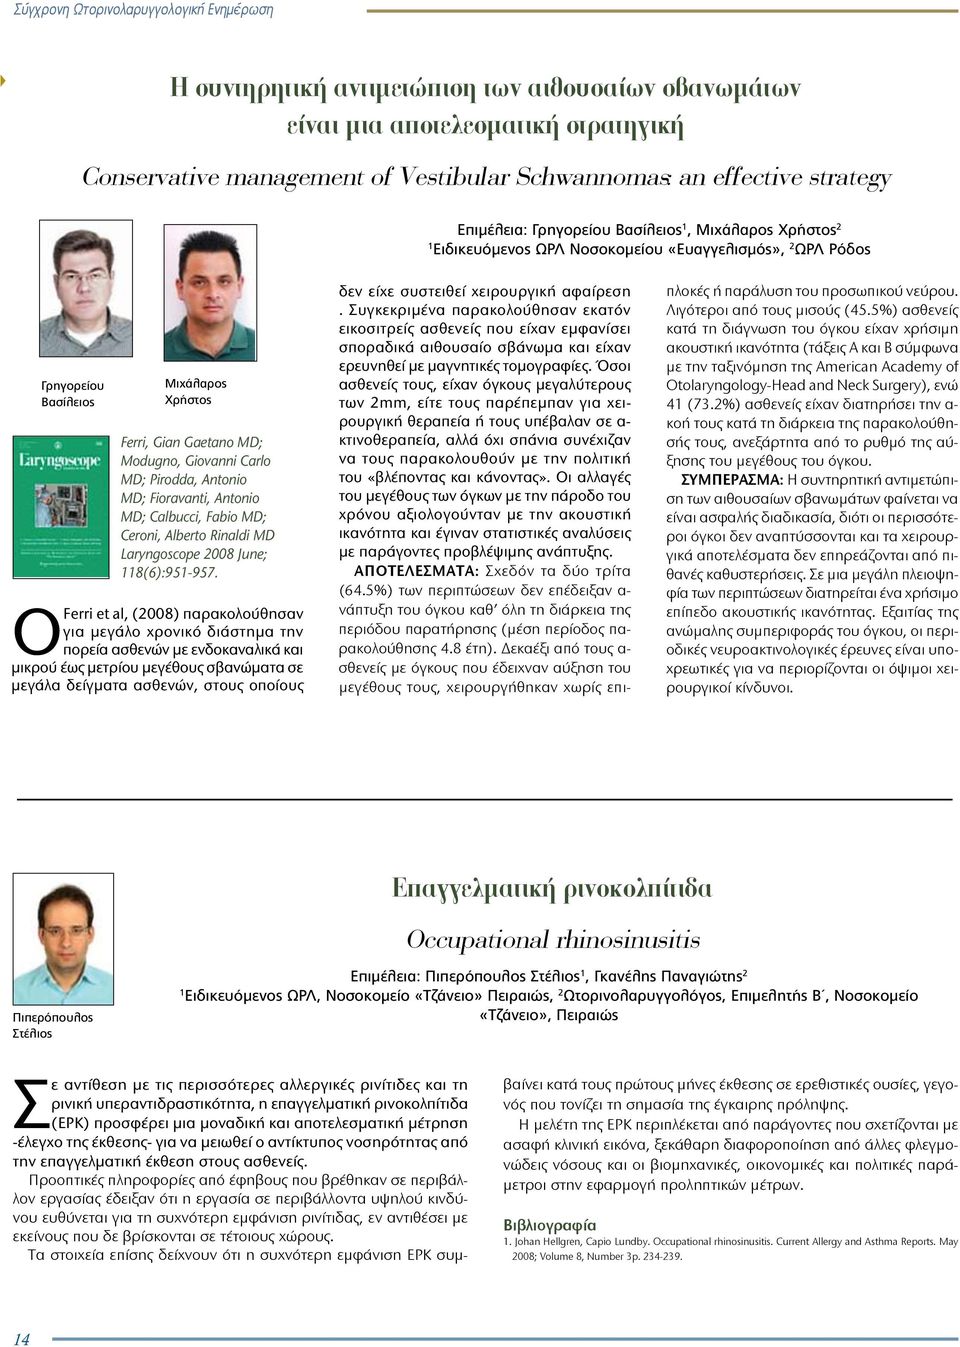 Fioravanti, Antonio MD; Calbucci, Fabio MD; Ceroni, Alberto Rinaldi MD Laryngoscope 2008 June; 8(6):95-957.